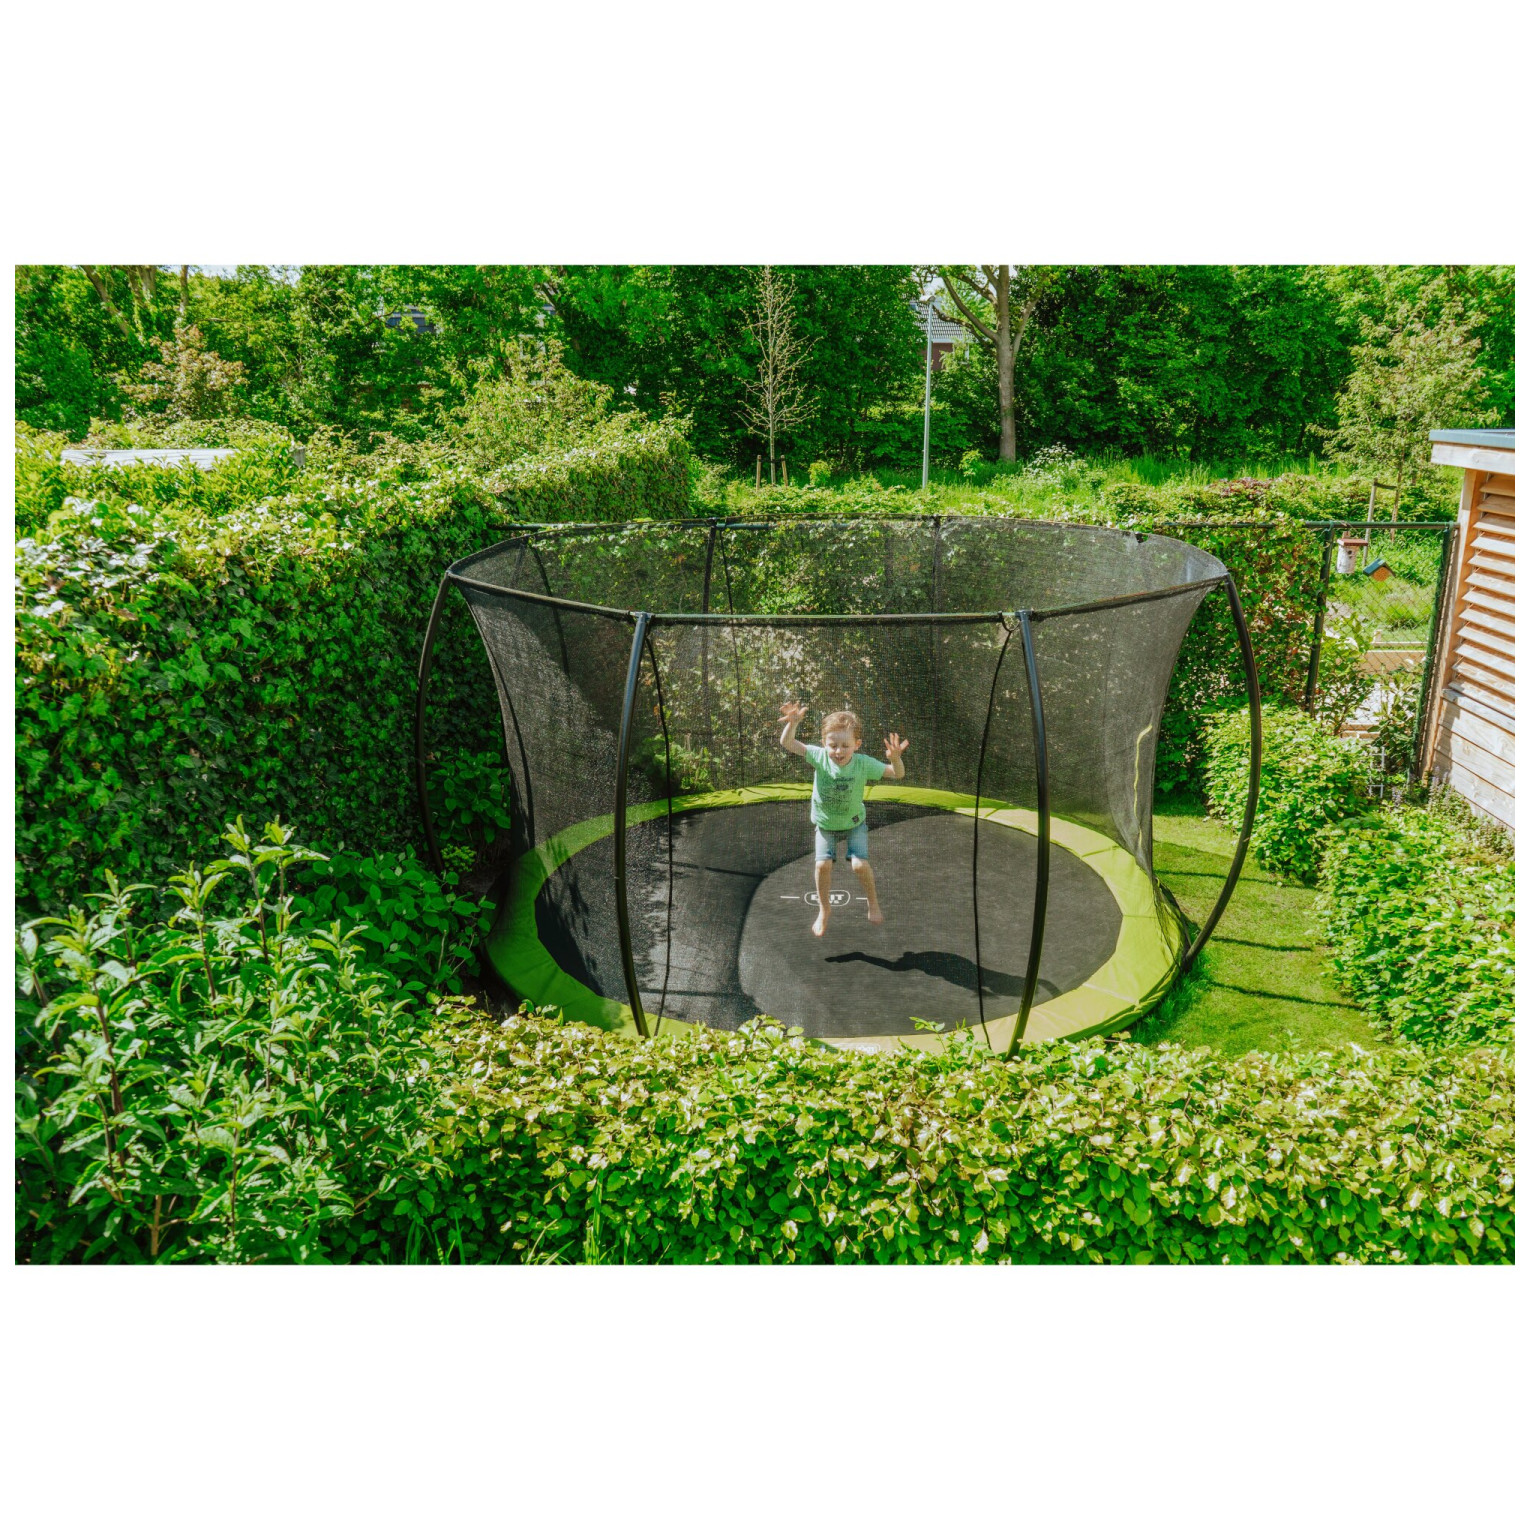 EXIT Silhouette inground trampoline ø366cm met veiligheidsn